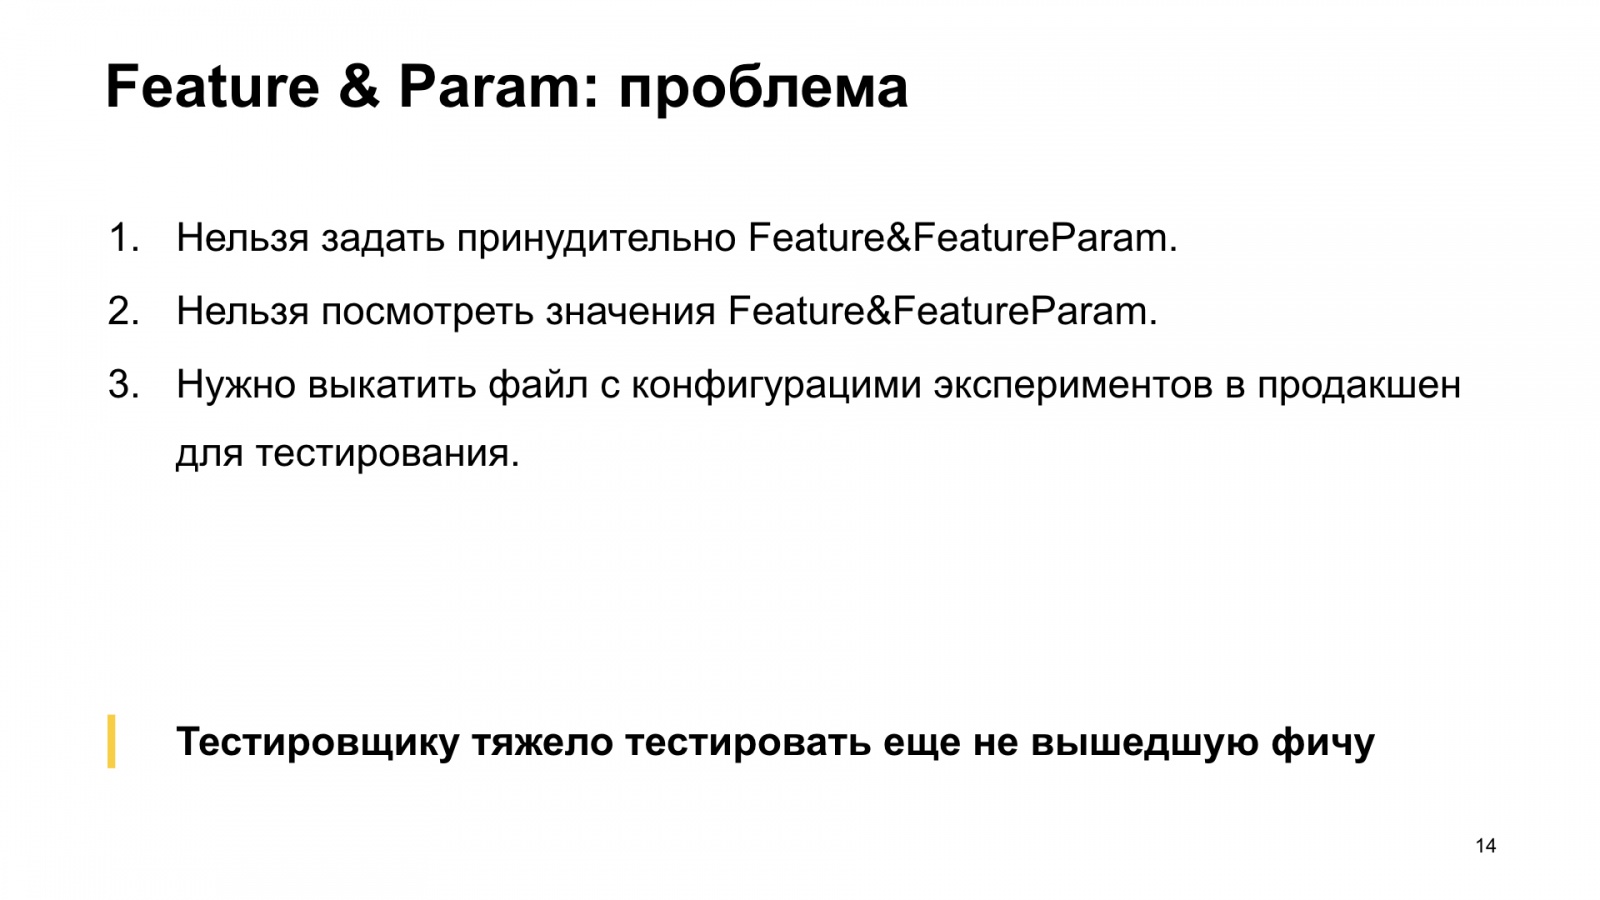 Как Браузер для iOS А-Б-тестирование улучшал. Доклад Яндекса - 15